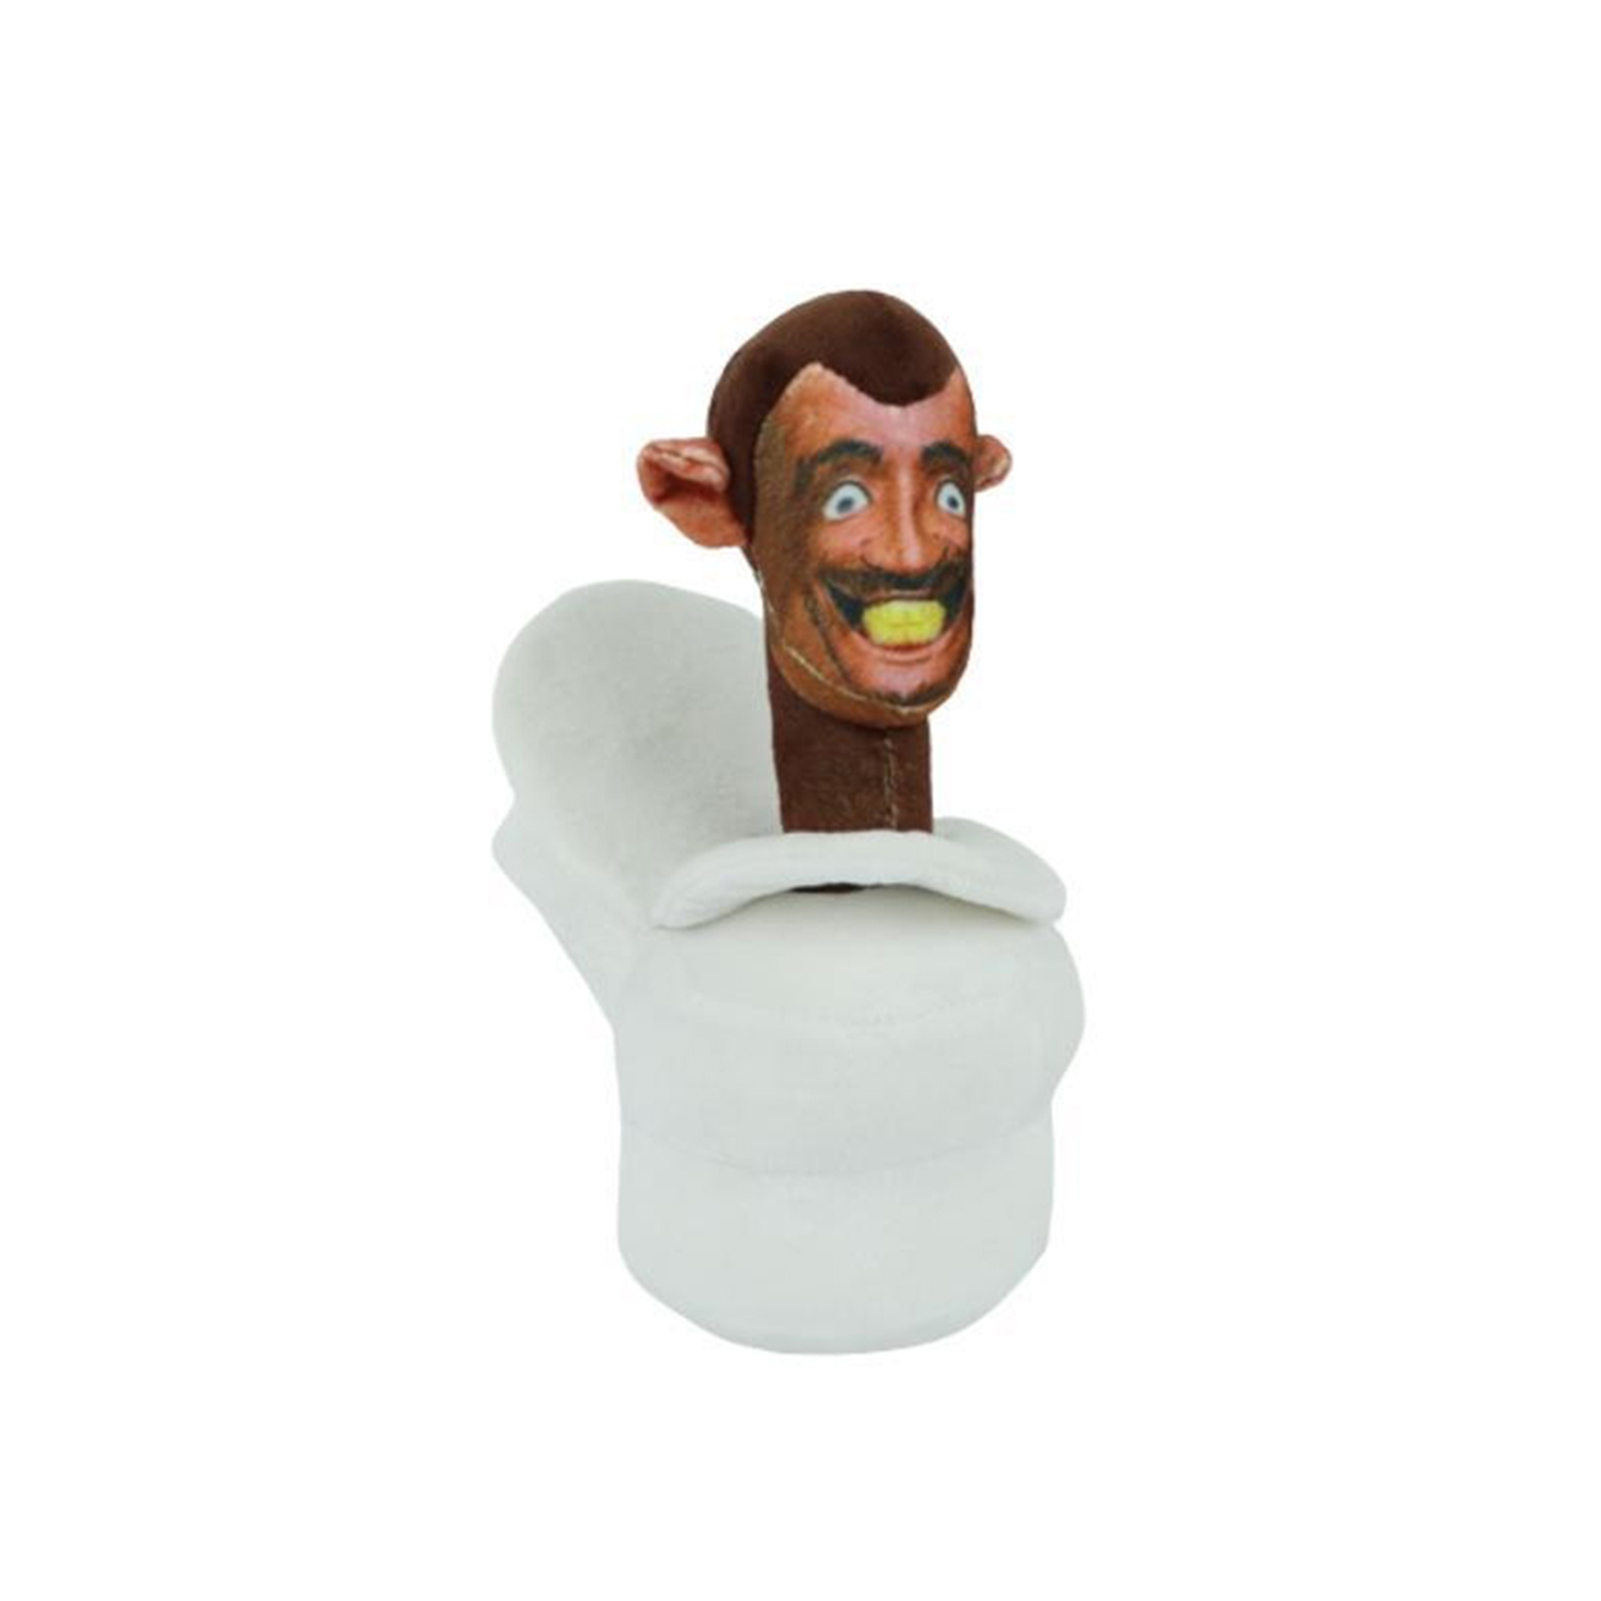 Cameraman Plush Toy Skibidi Toilet Plush Toy Cartoon Game Figure